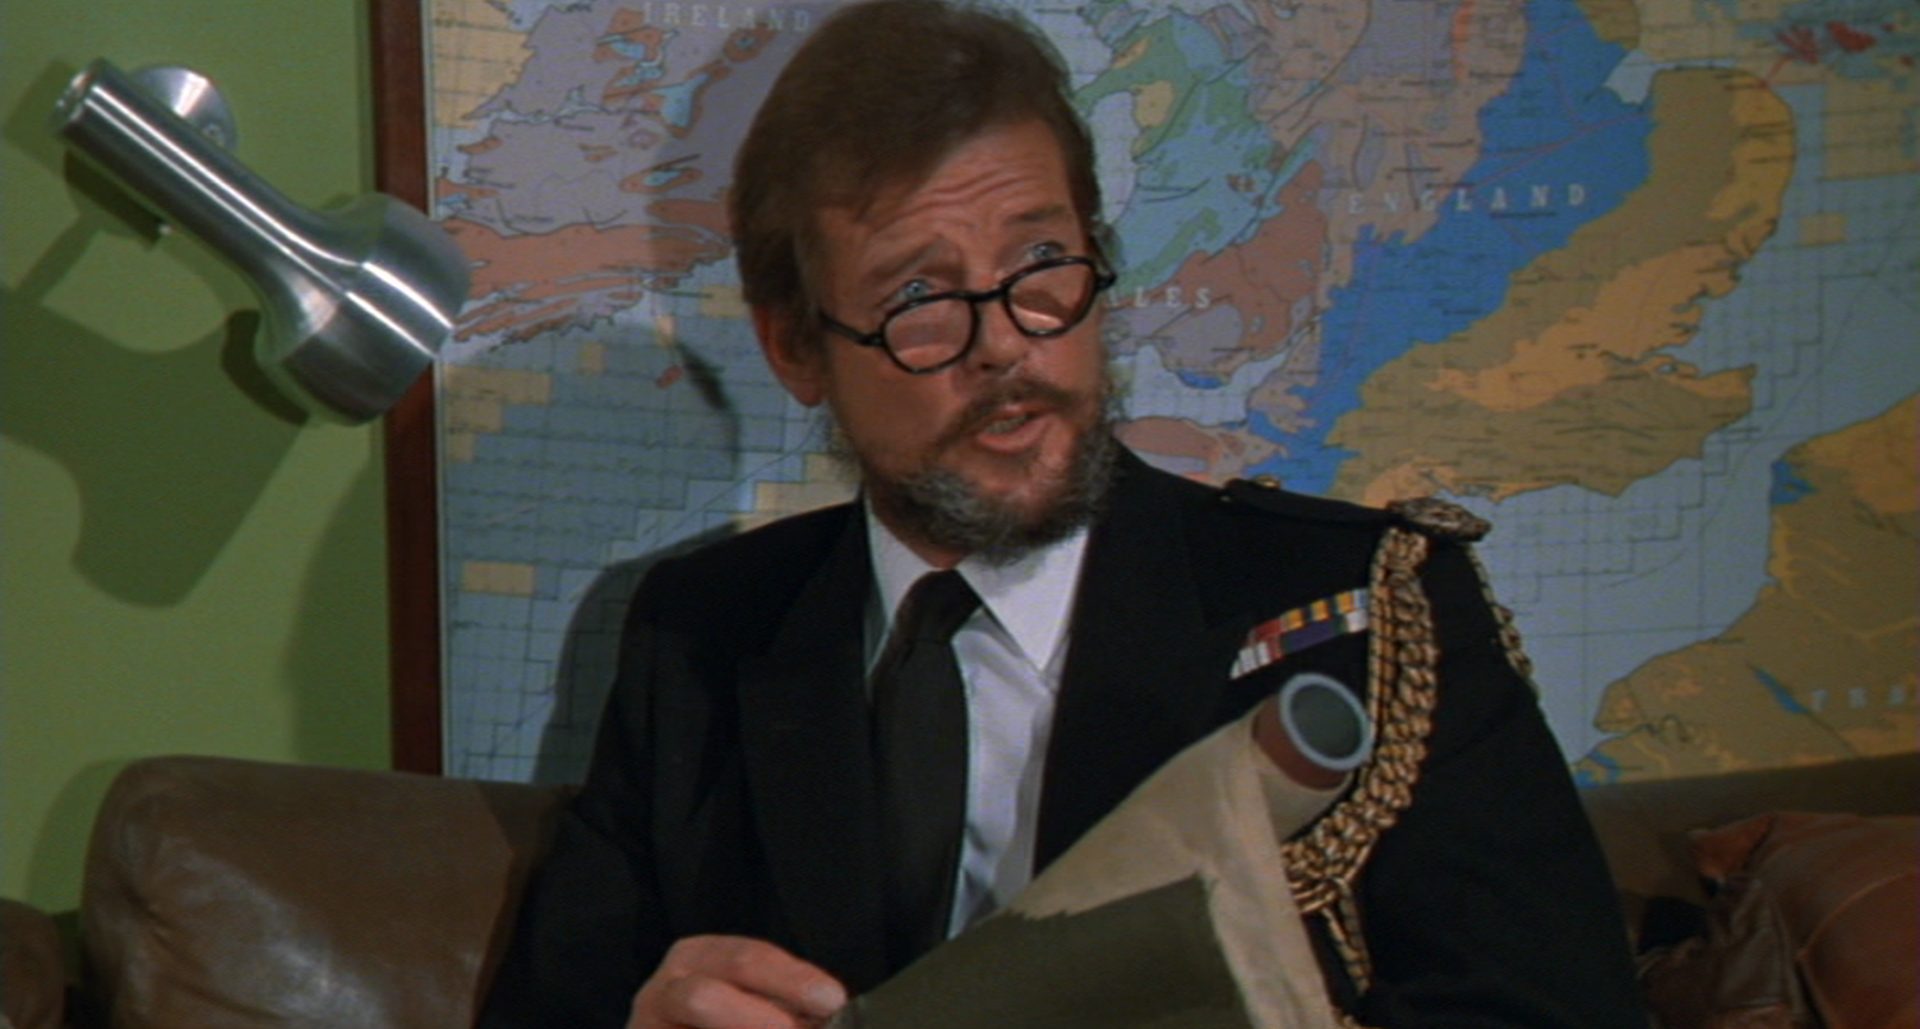 Roger Moore, mit Vollbart und Hornbrille, als ffolkes in exzentrischer Pose vor einer Karte.